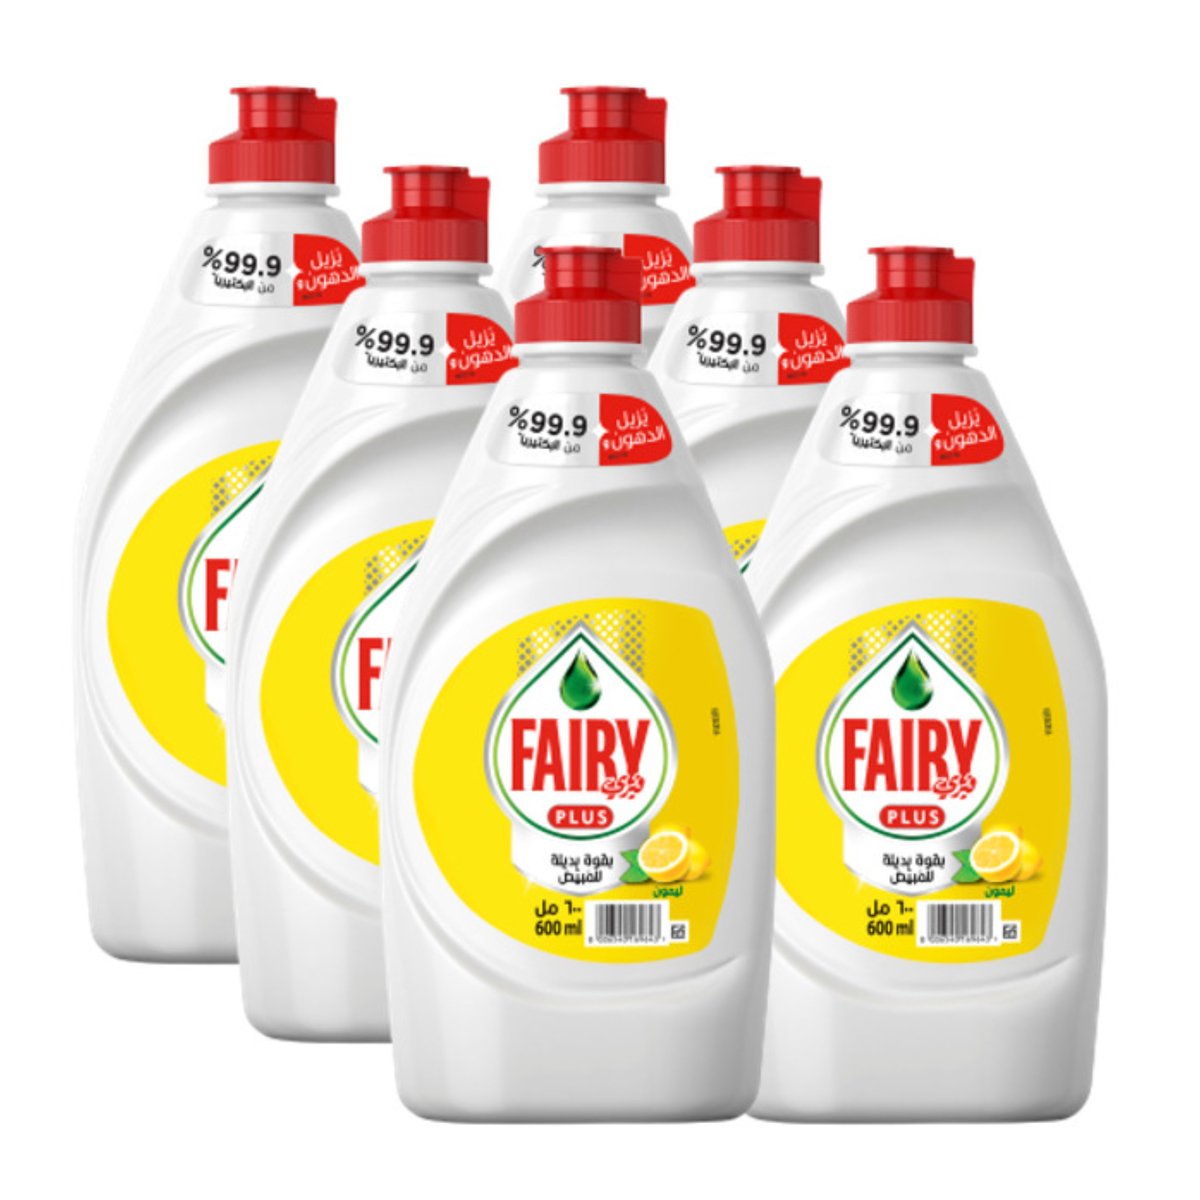 Fairy Plus Lemon Dishwashing Liquid Soap Mega Box Value Pack 6 x 600 ml